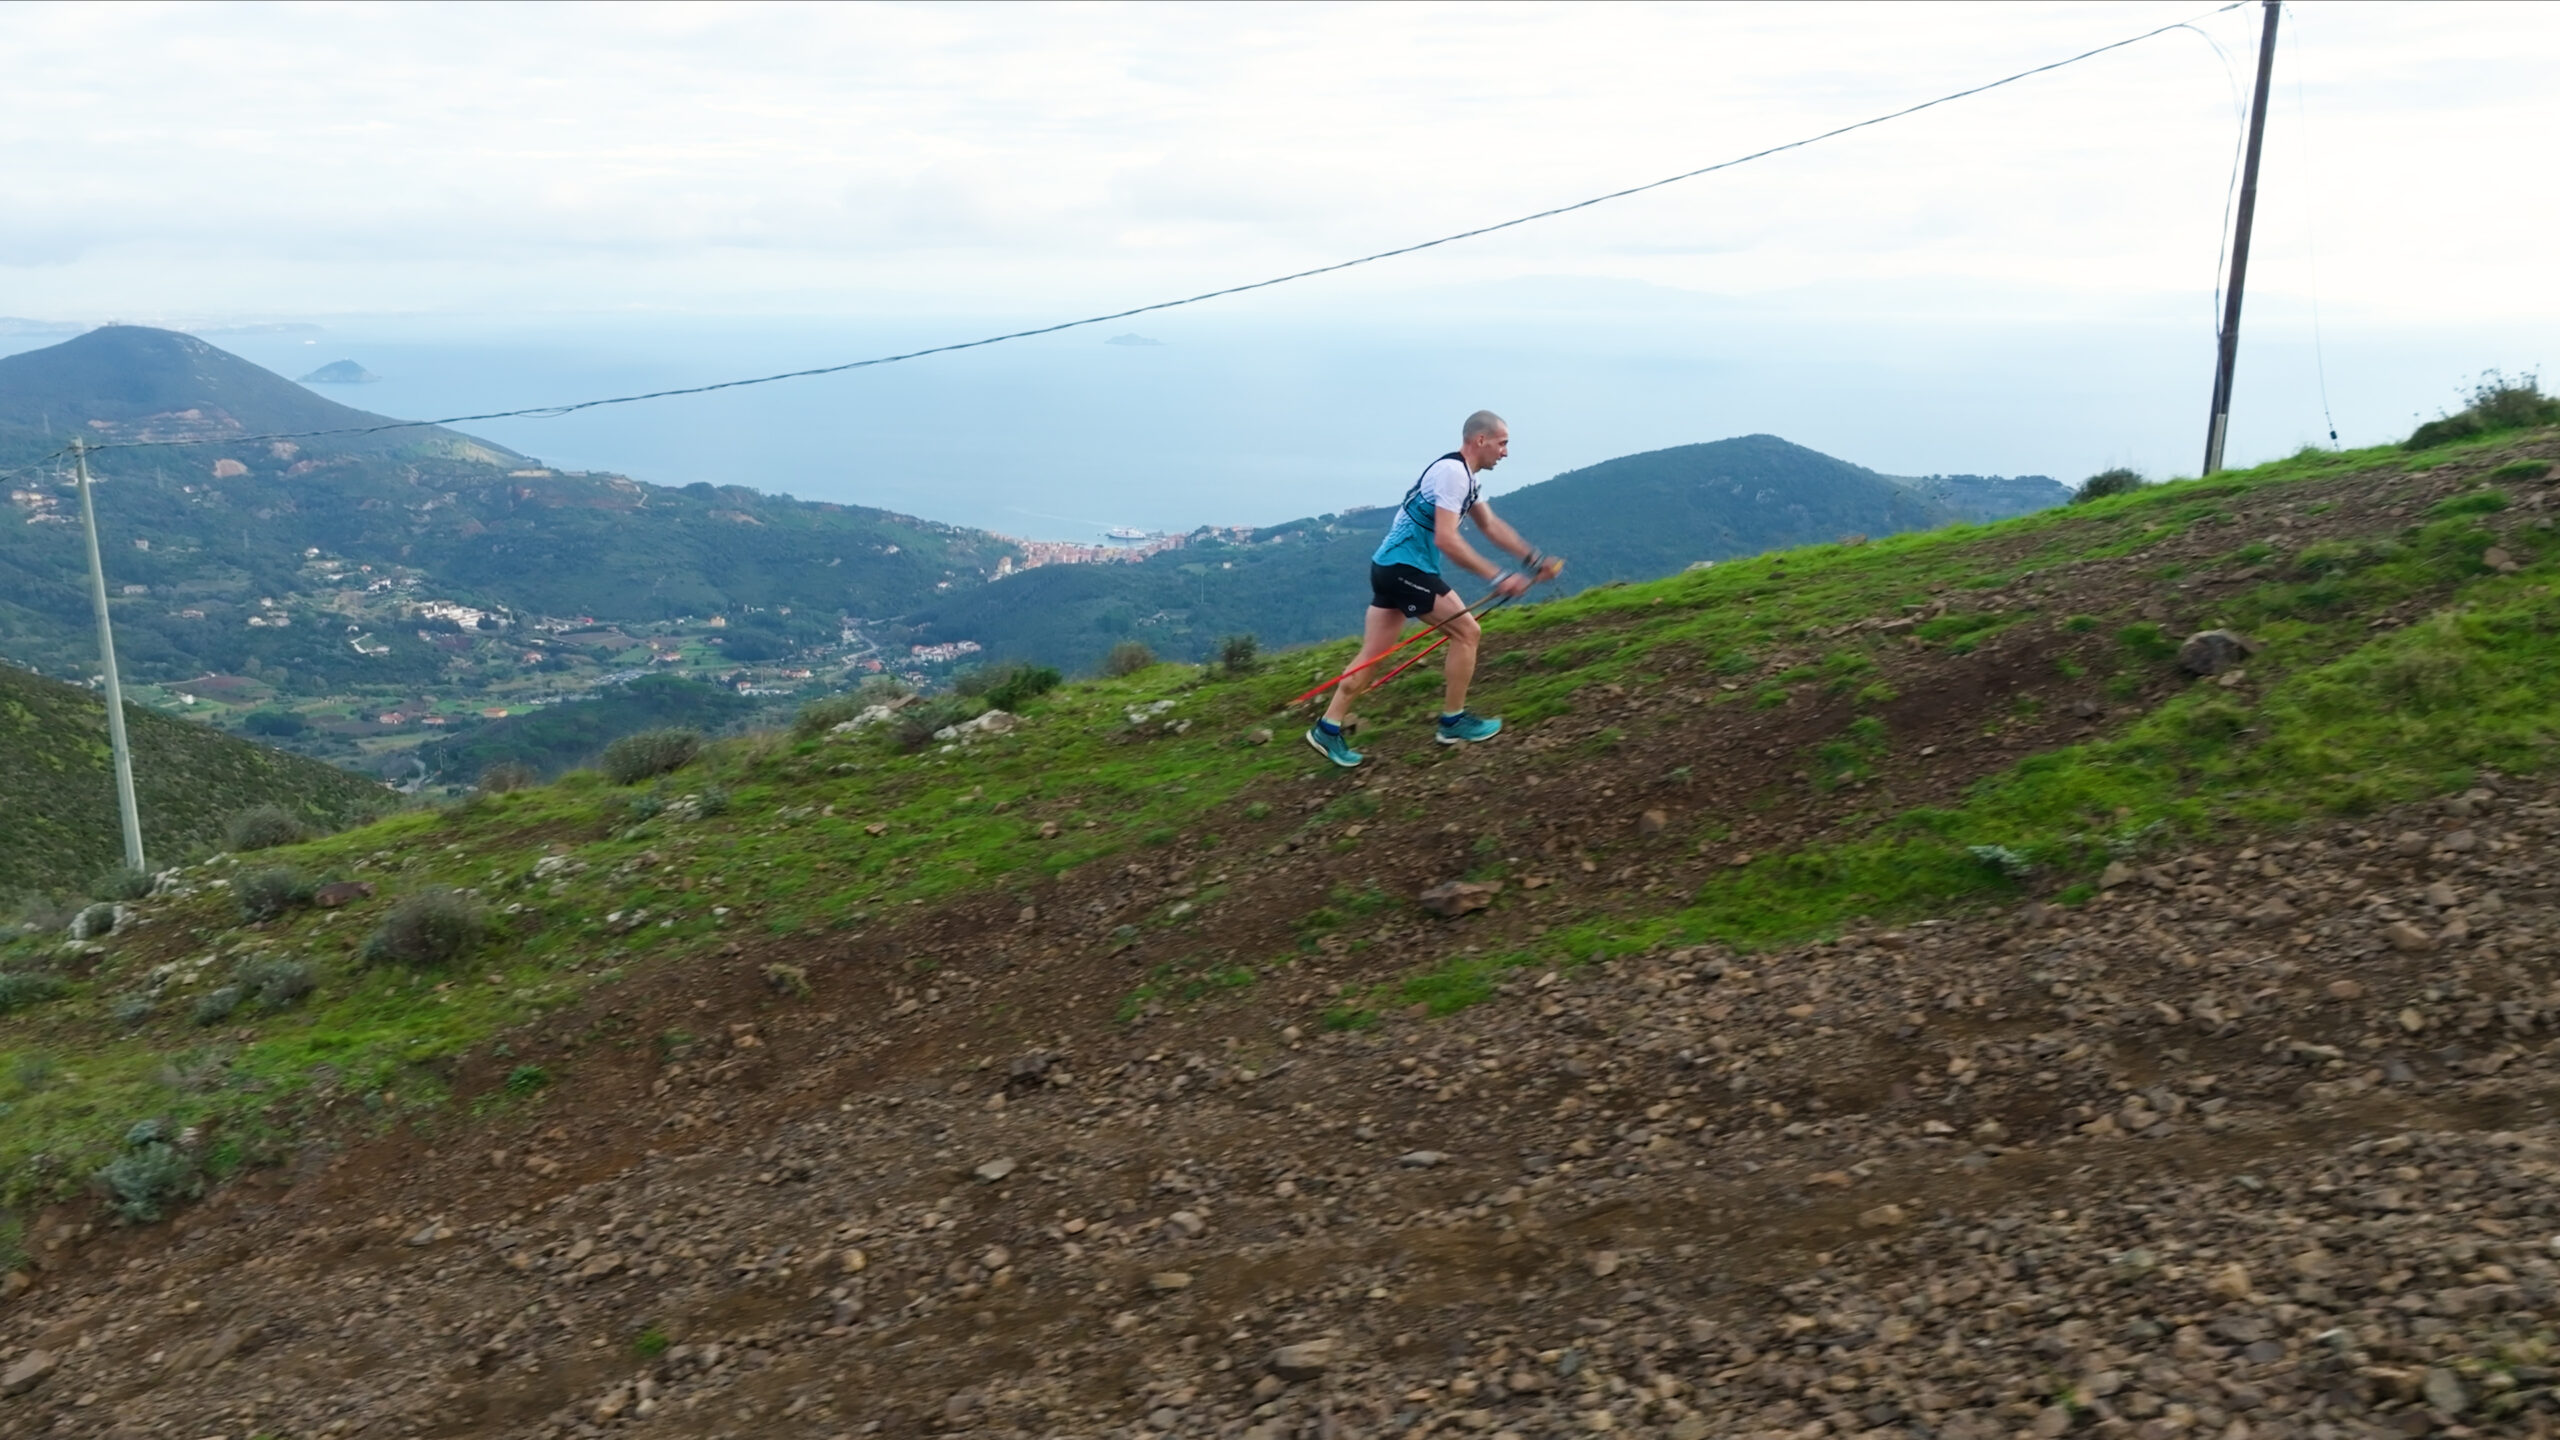 <strong>L’elbano dei record: Matteo Anselmi stabilisce il nuovo record<br>di trail running sulla Grande Traversata Elbana</strong>